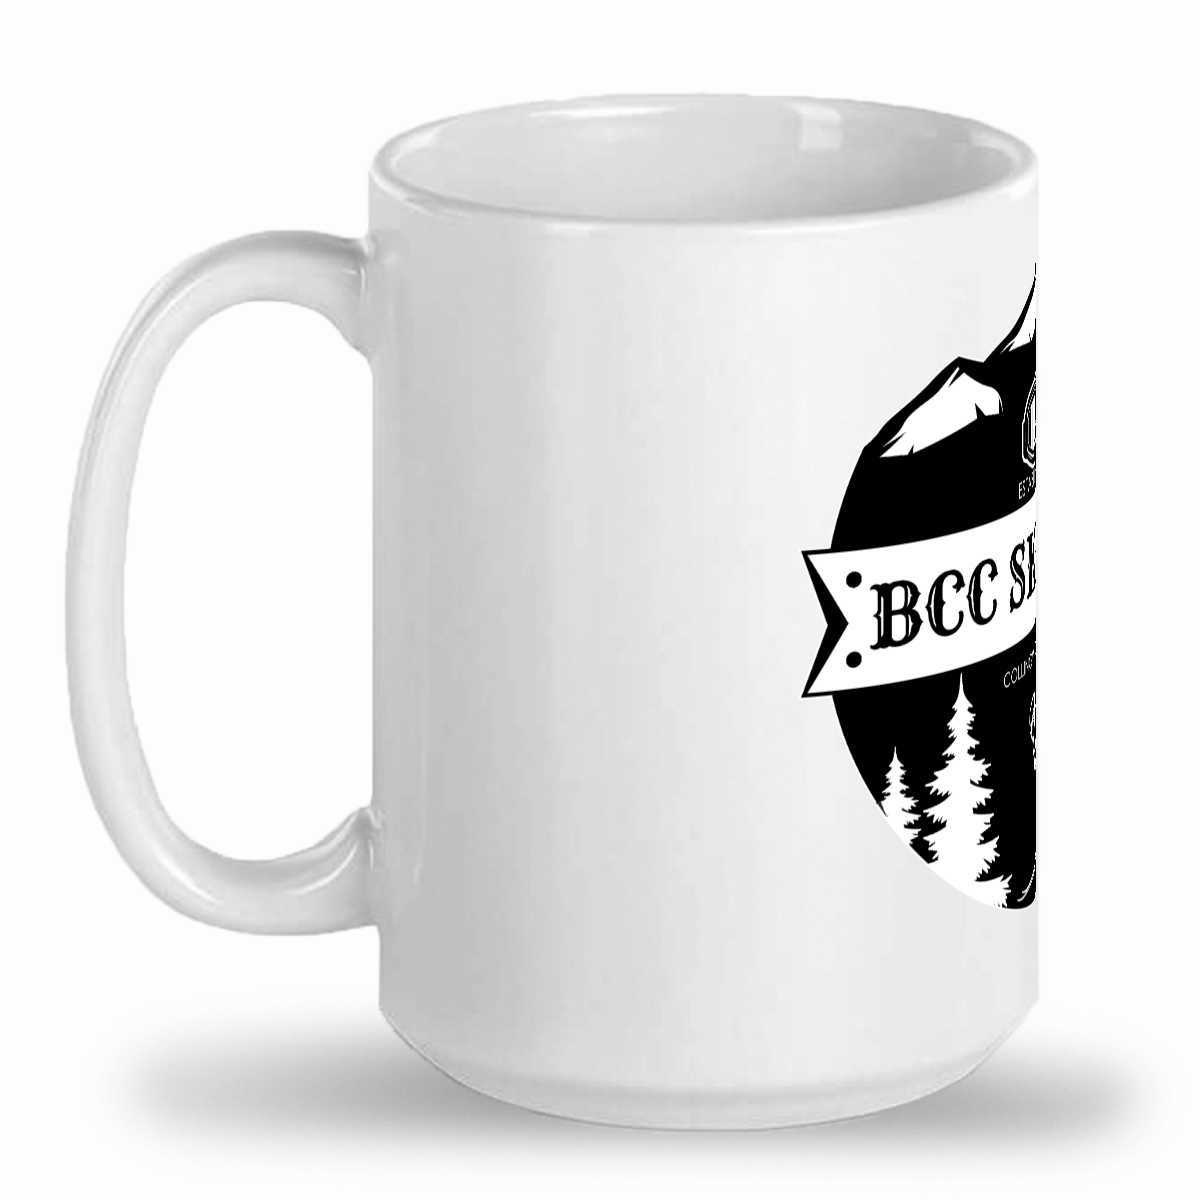 BCC Ski Team Ceramic Mug (pricing in USD)